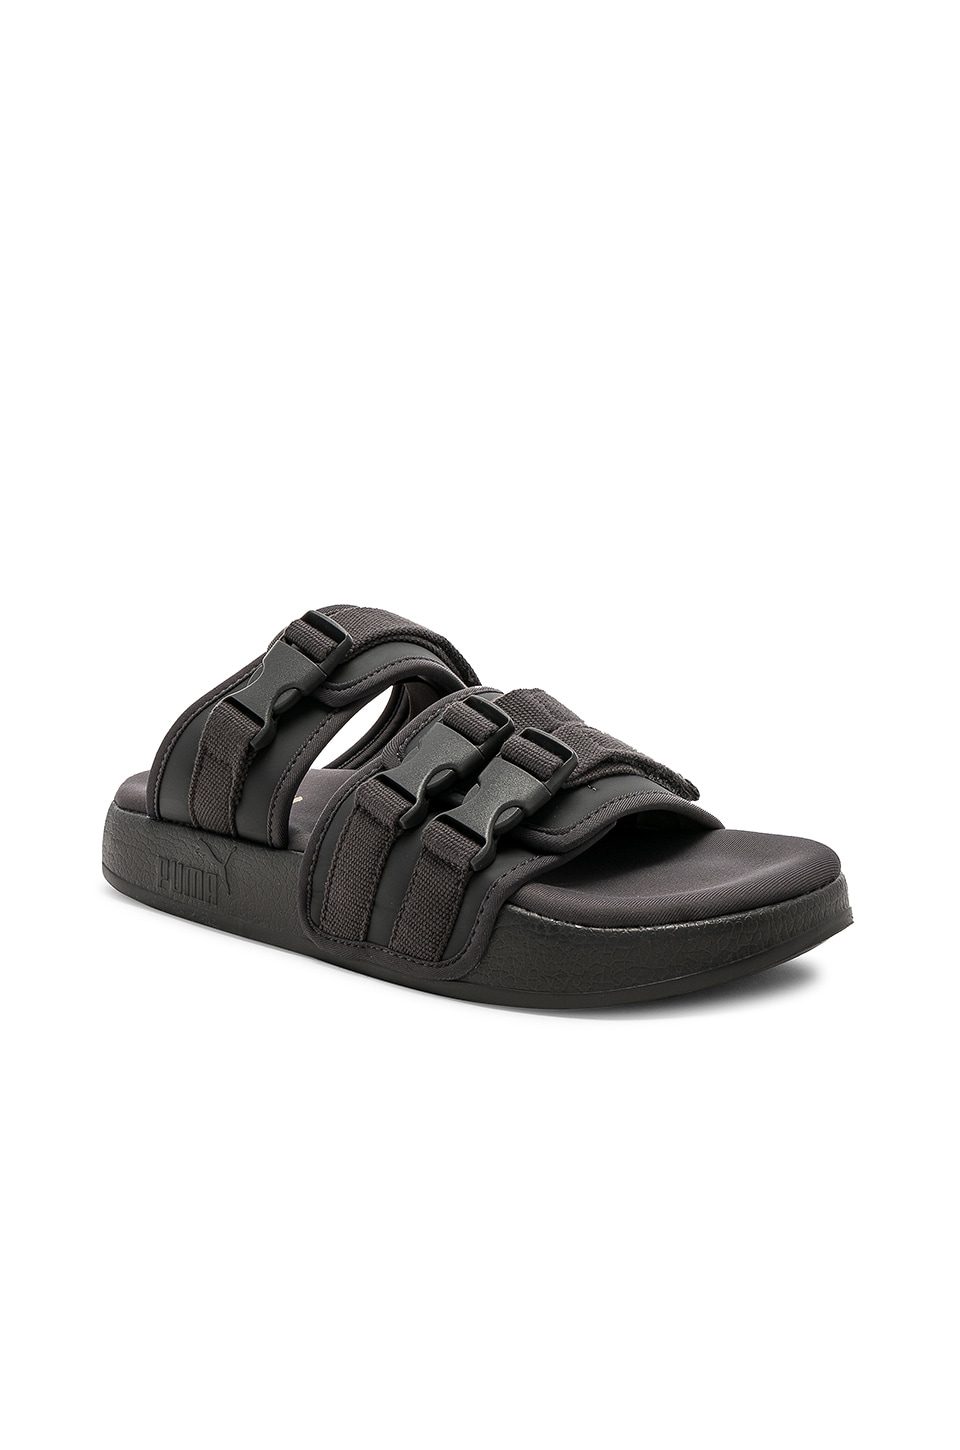 puma asphalt sandals